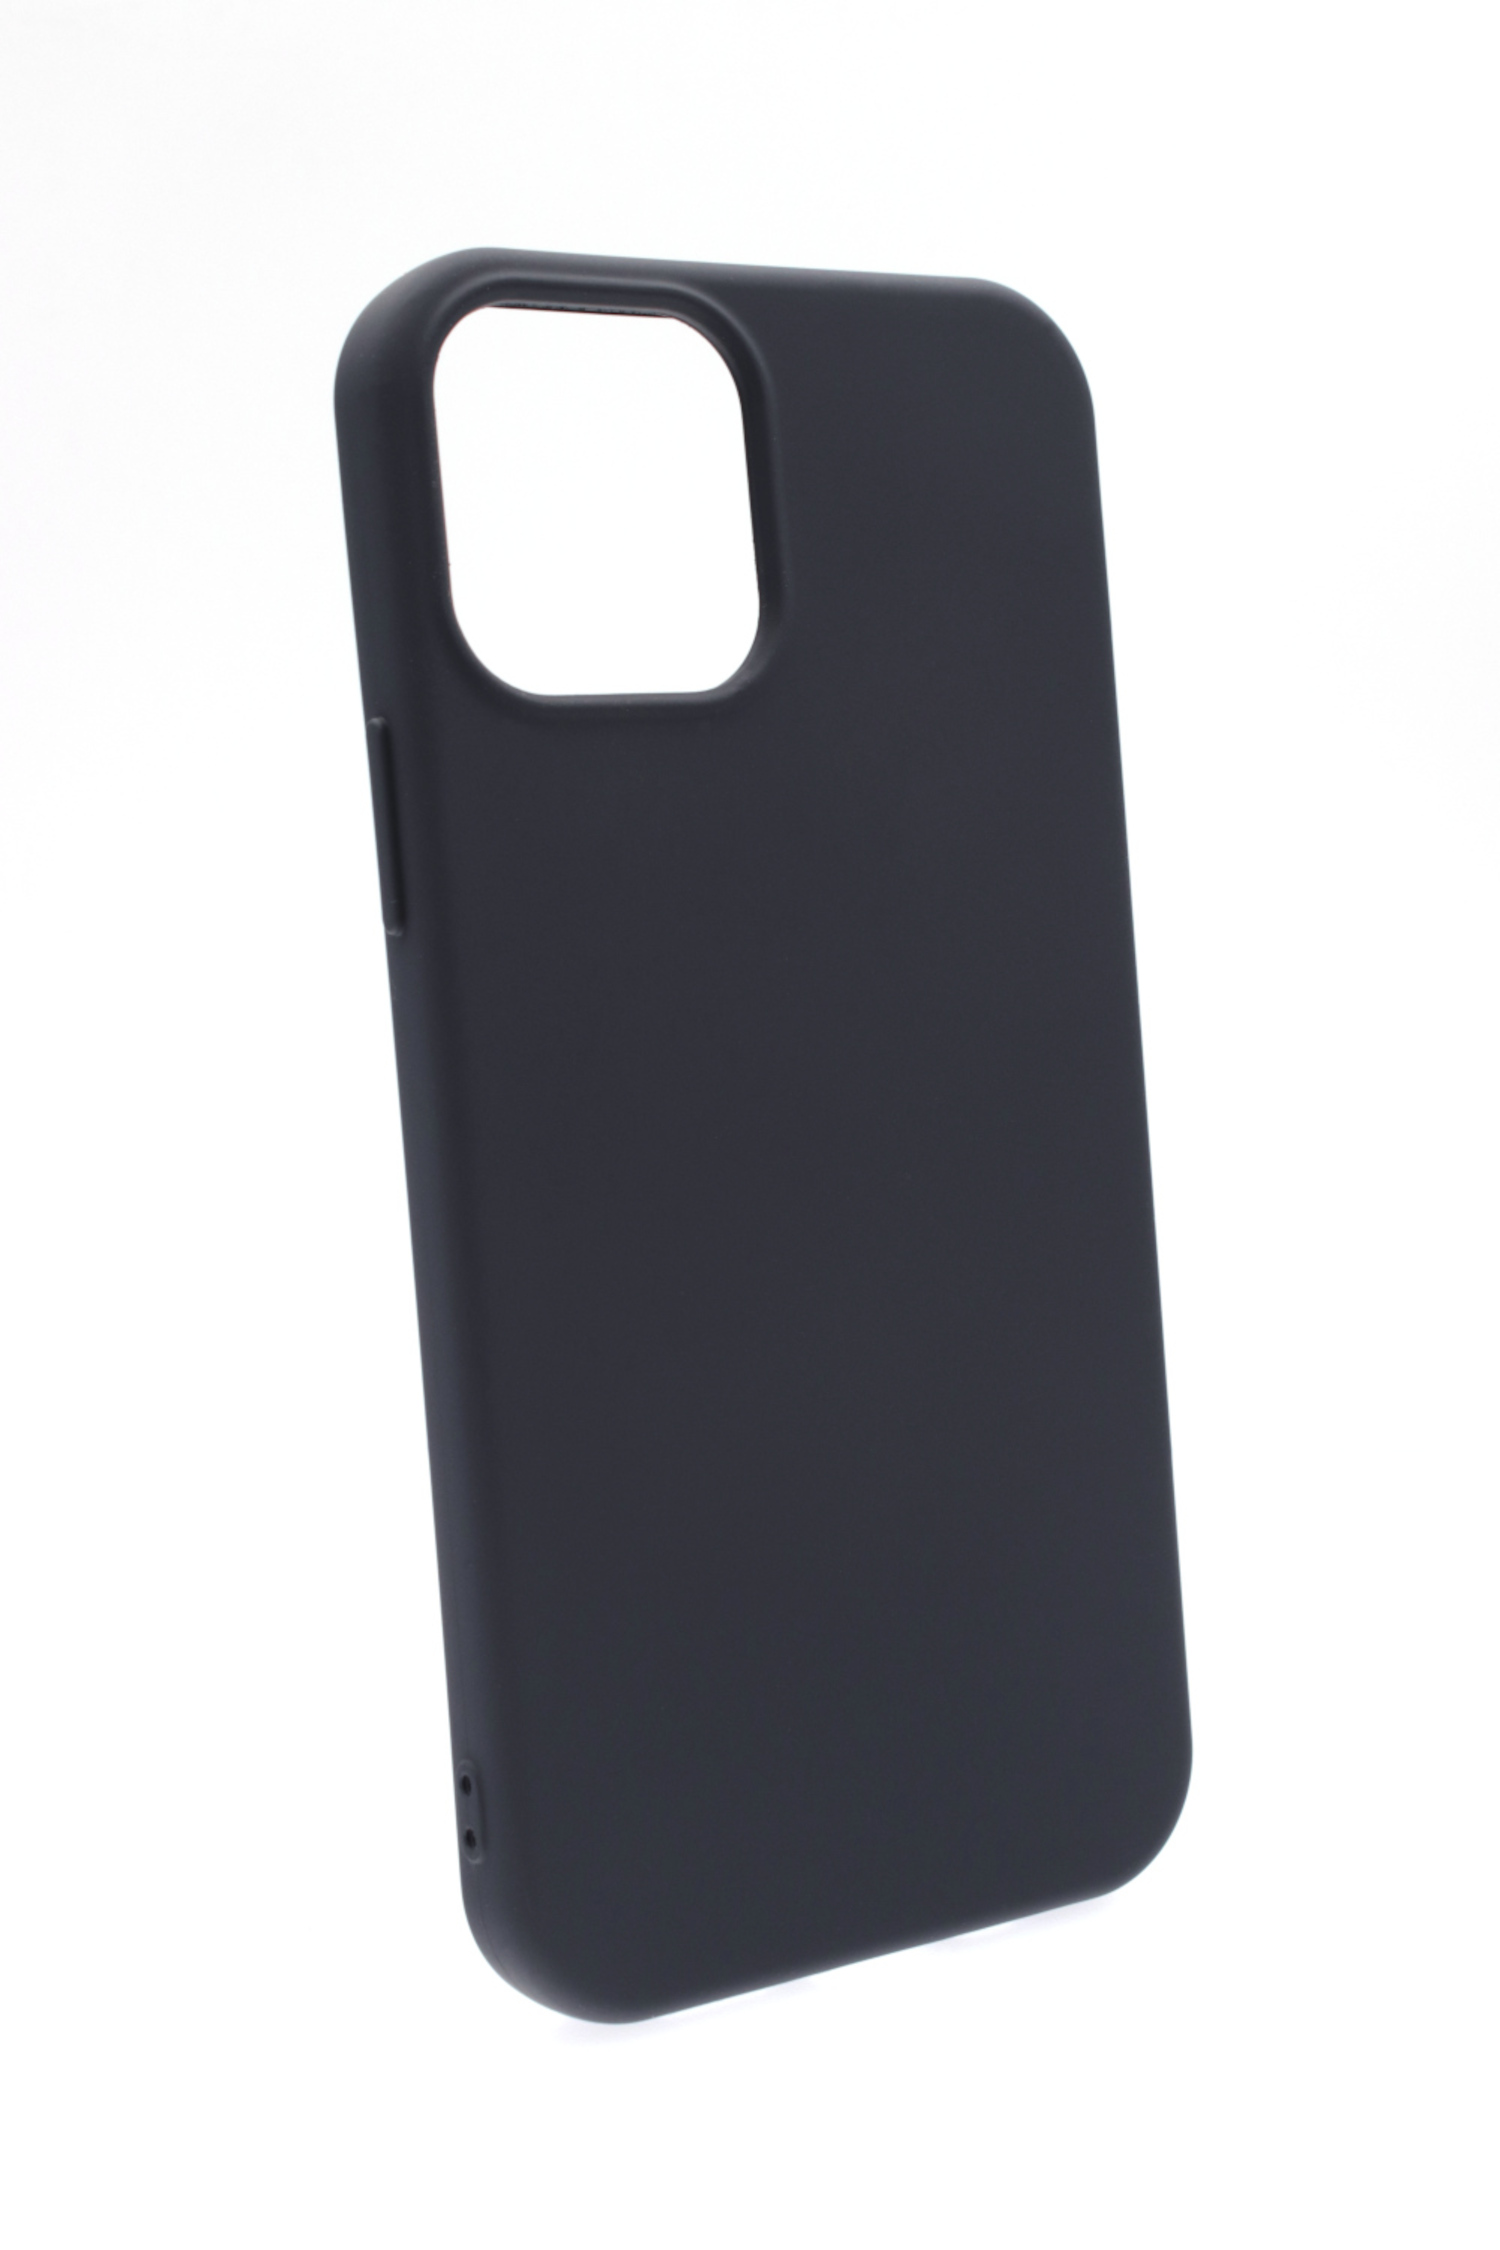 JAMCOVER Silikon mini, Backcover, iPhone Case, Dunkelblau 12 Apple